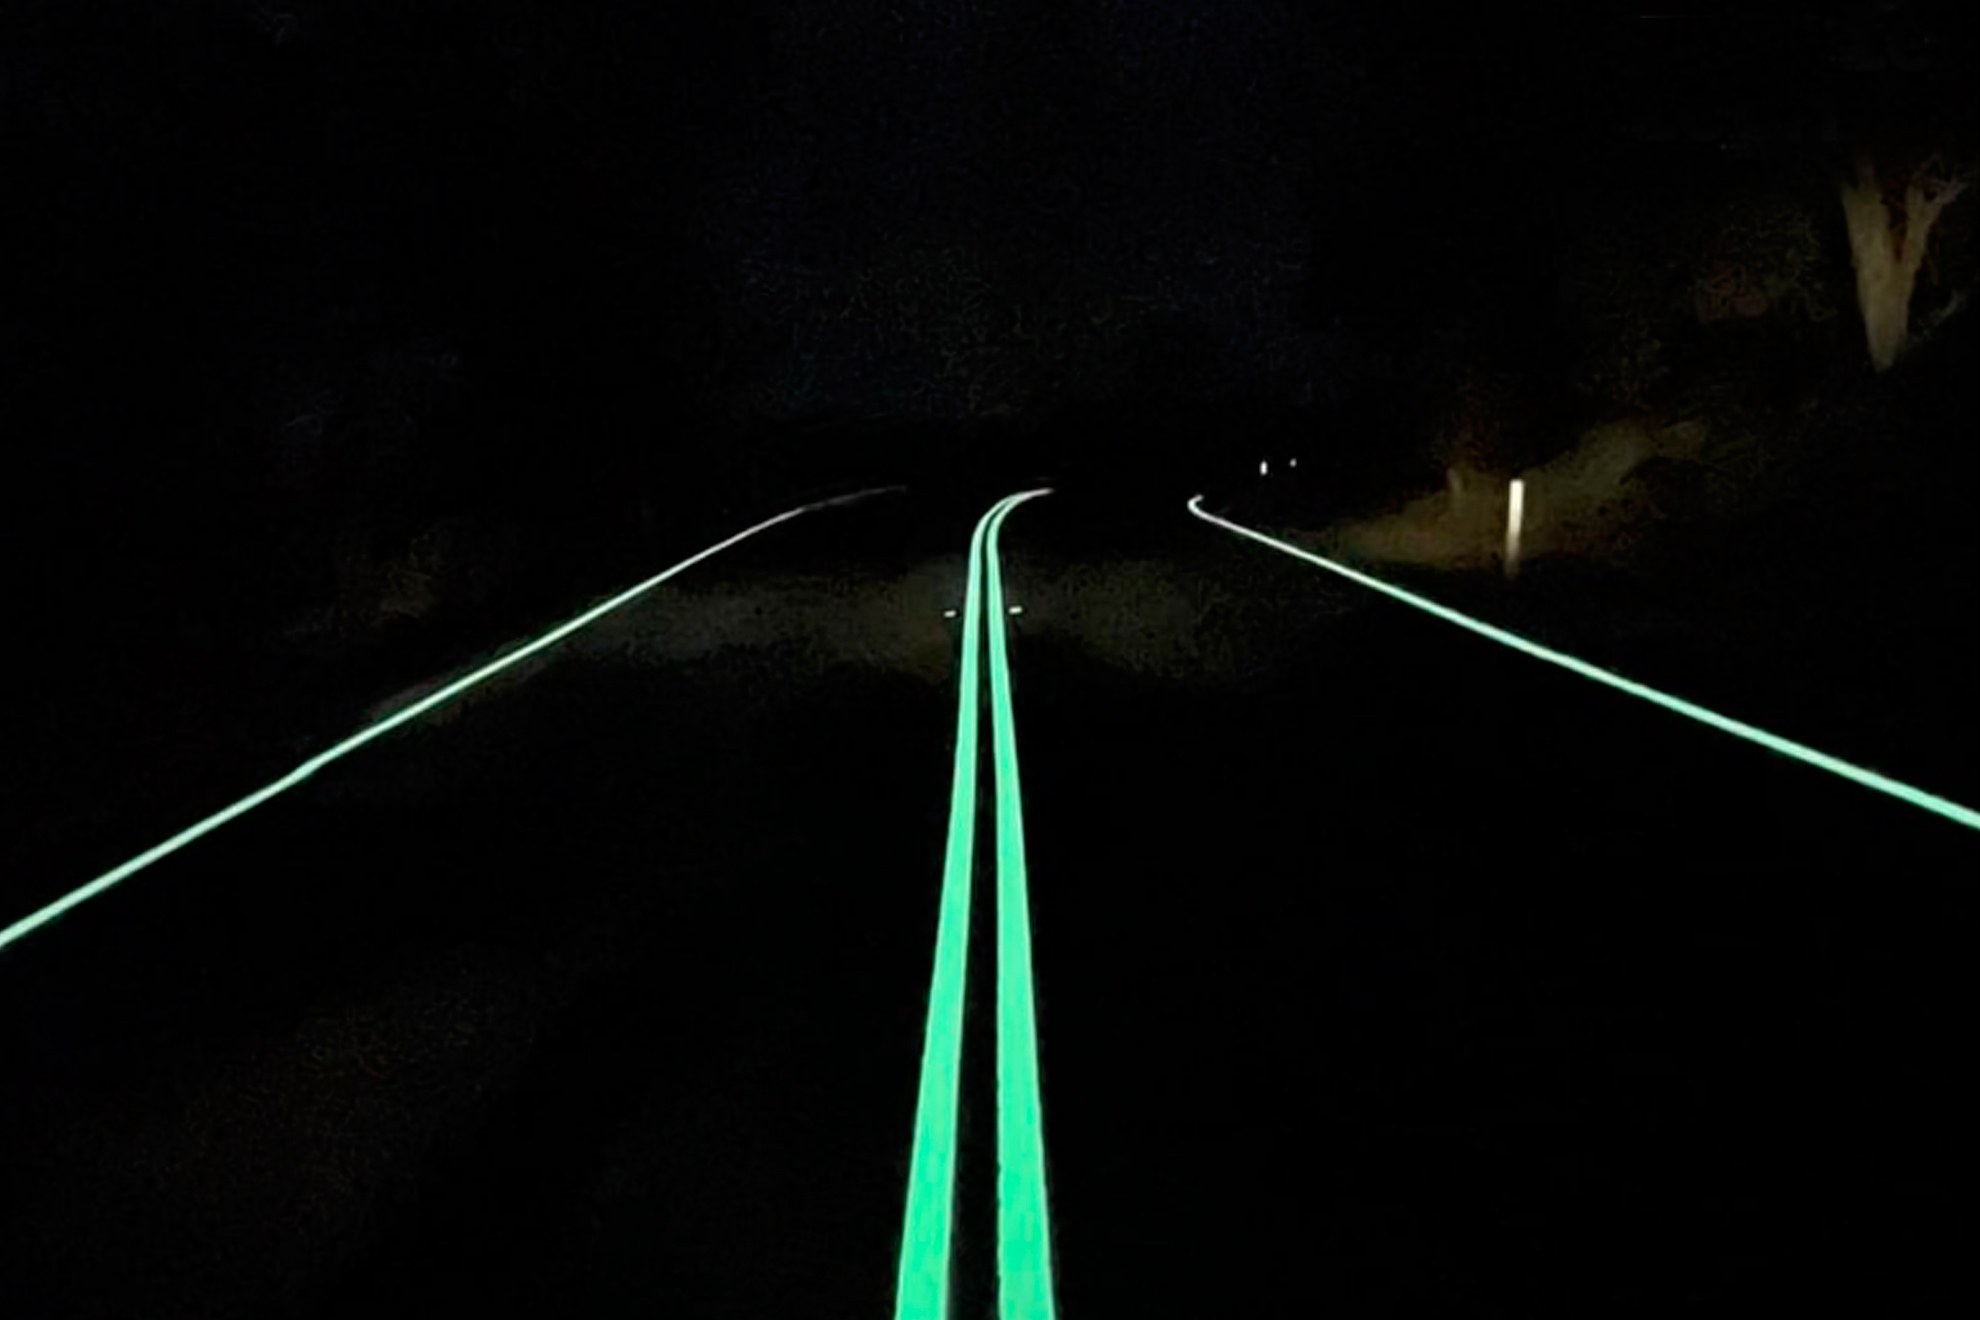 Seguridad Vial - DGT: Así son las líneas fluorescentes en carreteras. ¿Tomará nota la DGT? | Marca